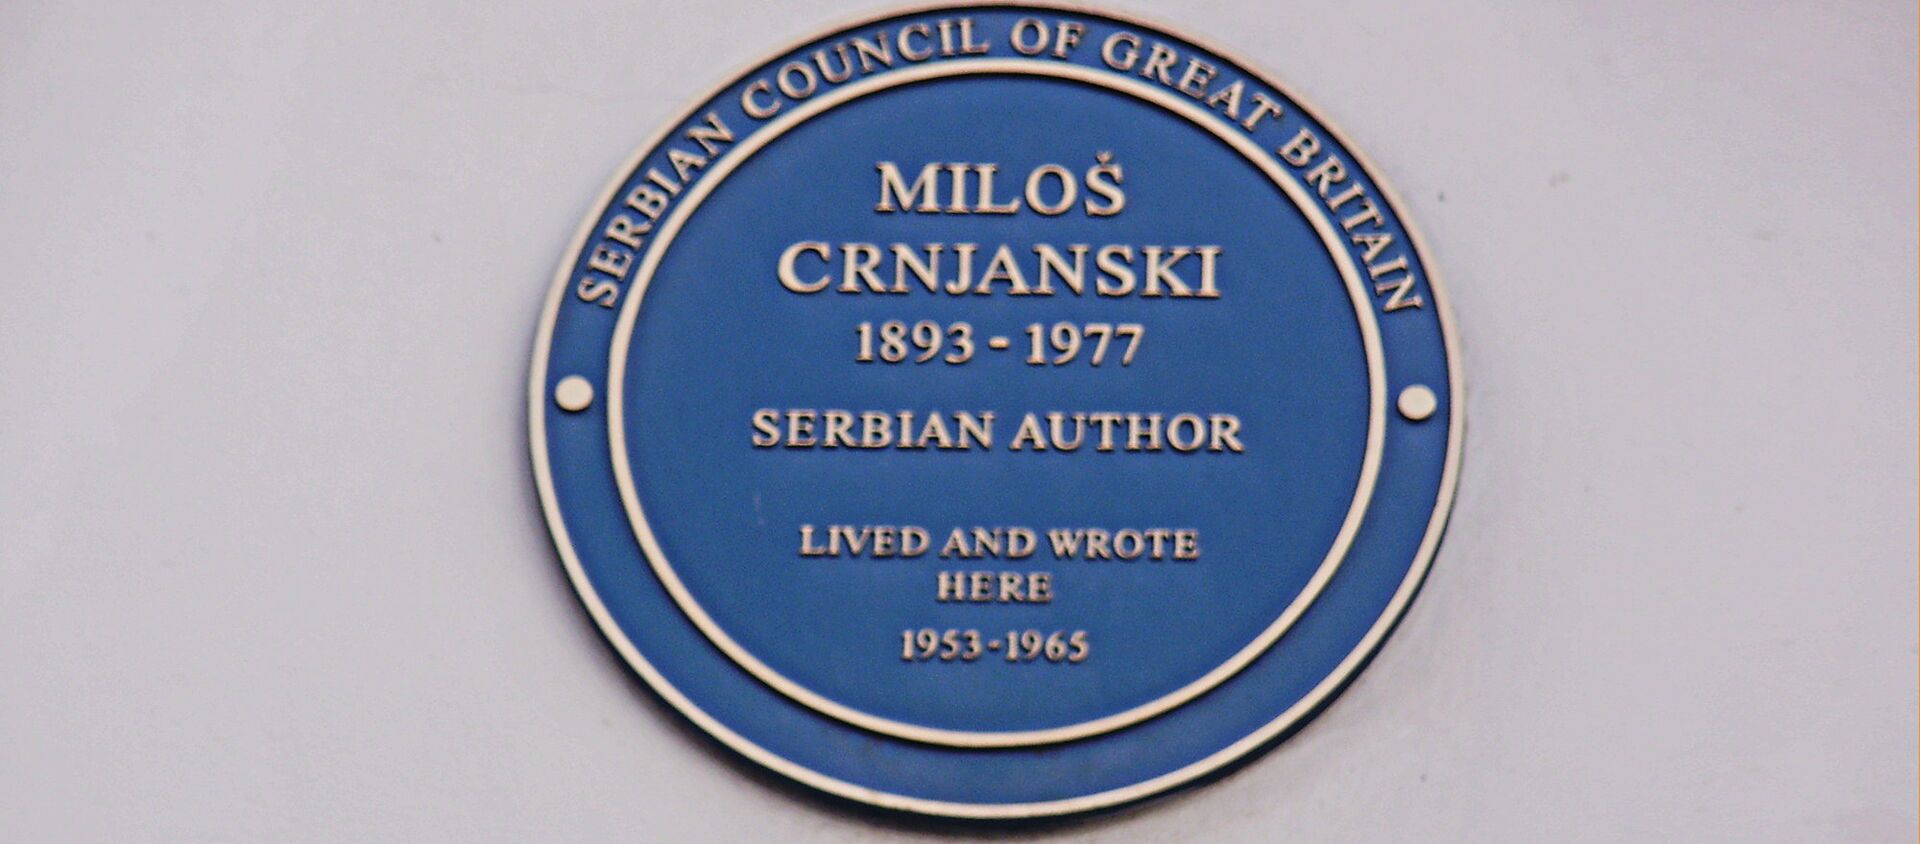 Spomen ploča Milošu Crnjanskom u Londonu. - Sputnik Srbija, 1920, 18.11.2017